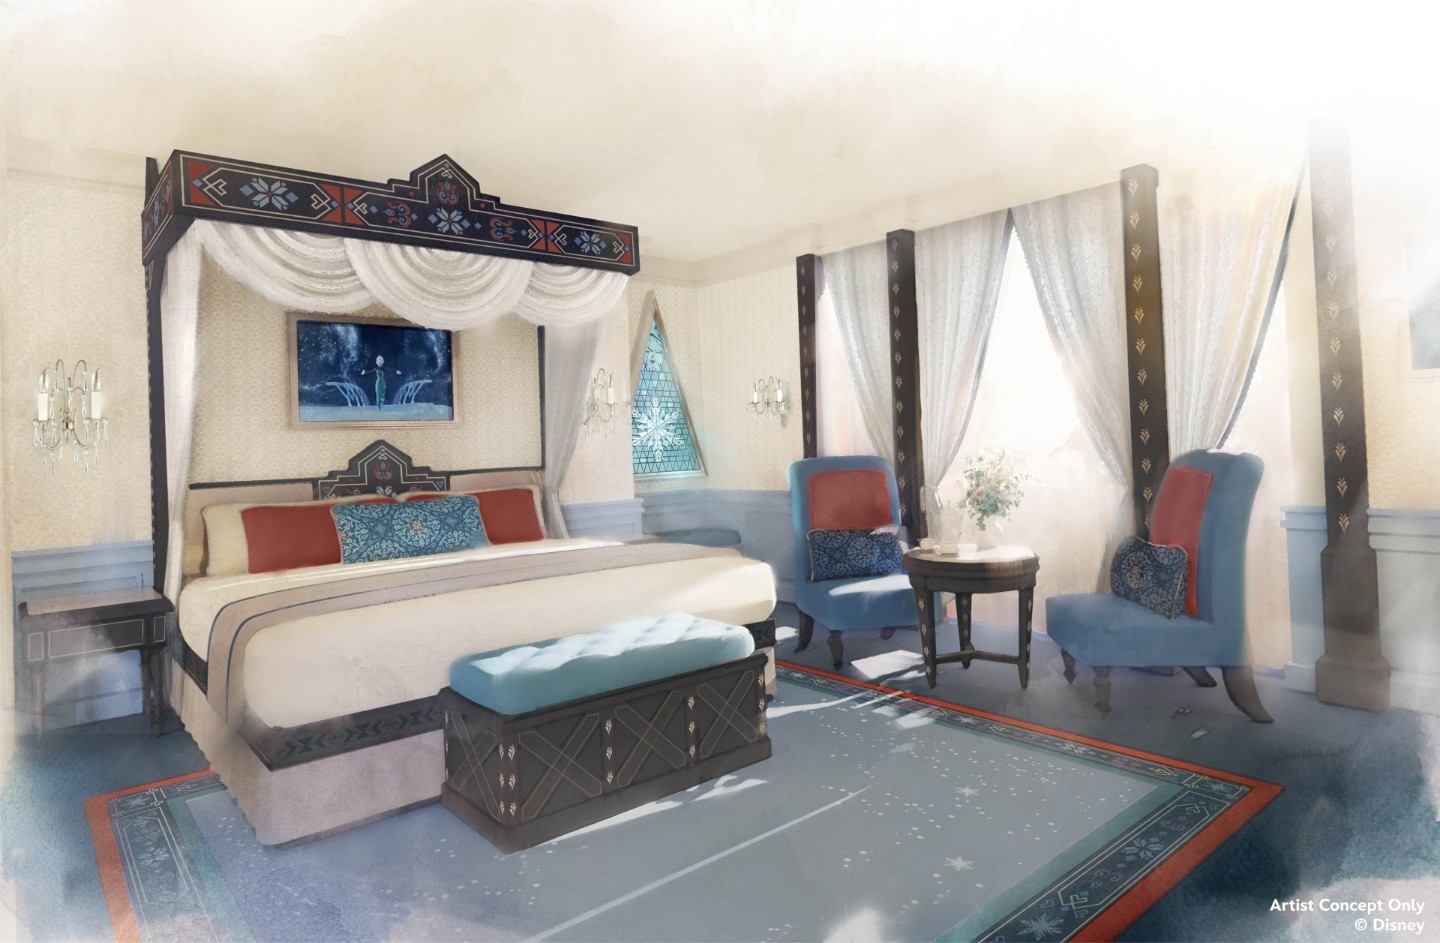 El Hotel Disneyland de París tendrá habitaciones con temática de Frozen -  Travel to the Magic